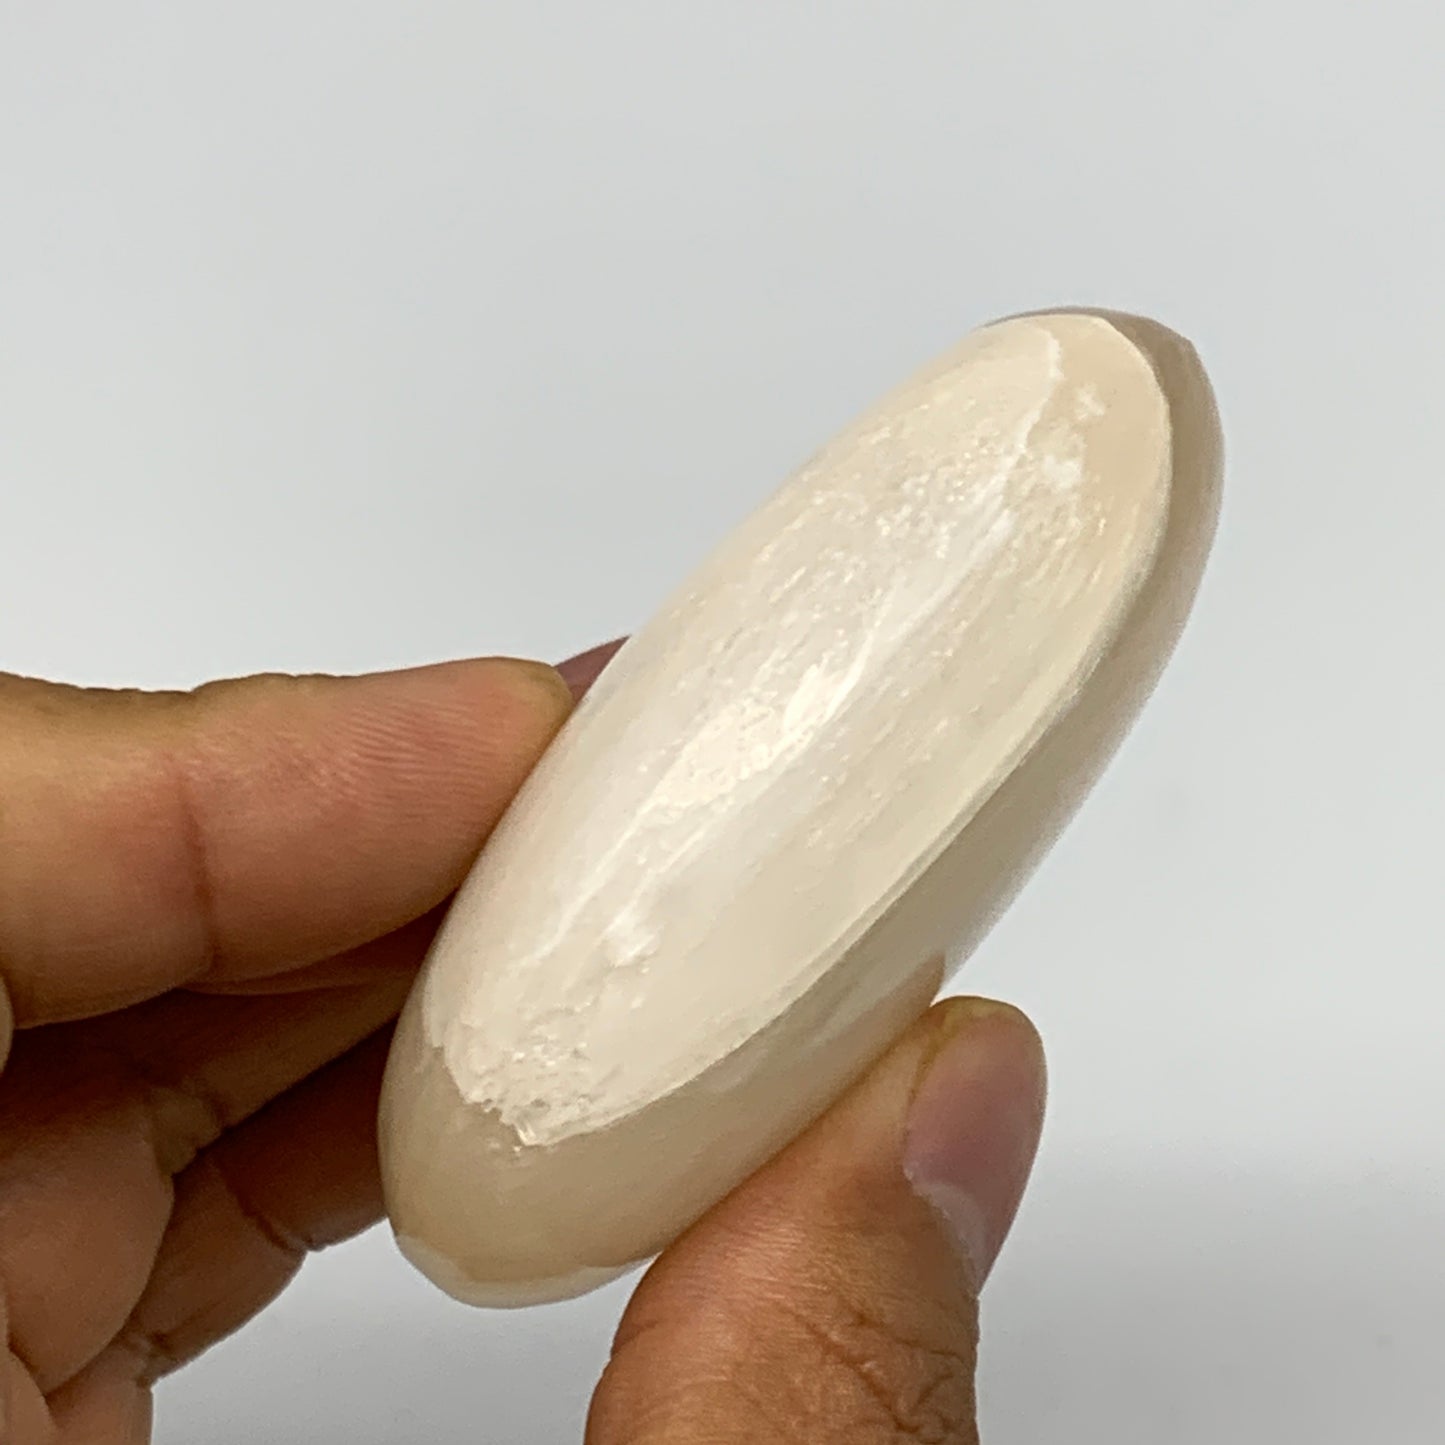 99g, 2.5"x2"x0.9", White Satin Spar (Selenite) Palmstone Crystal Gypsum, B22579